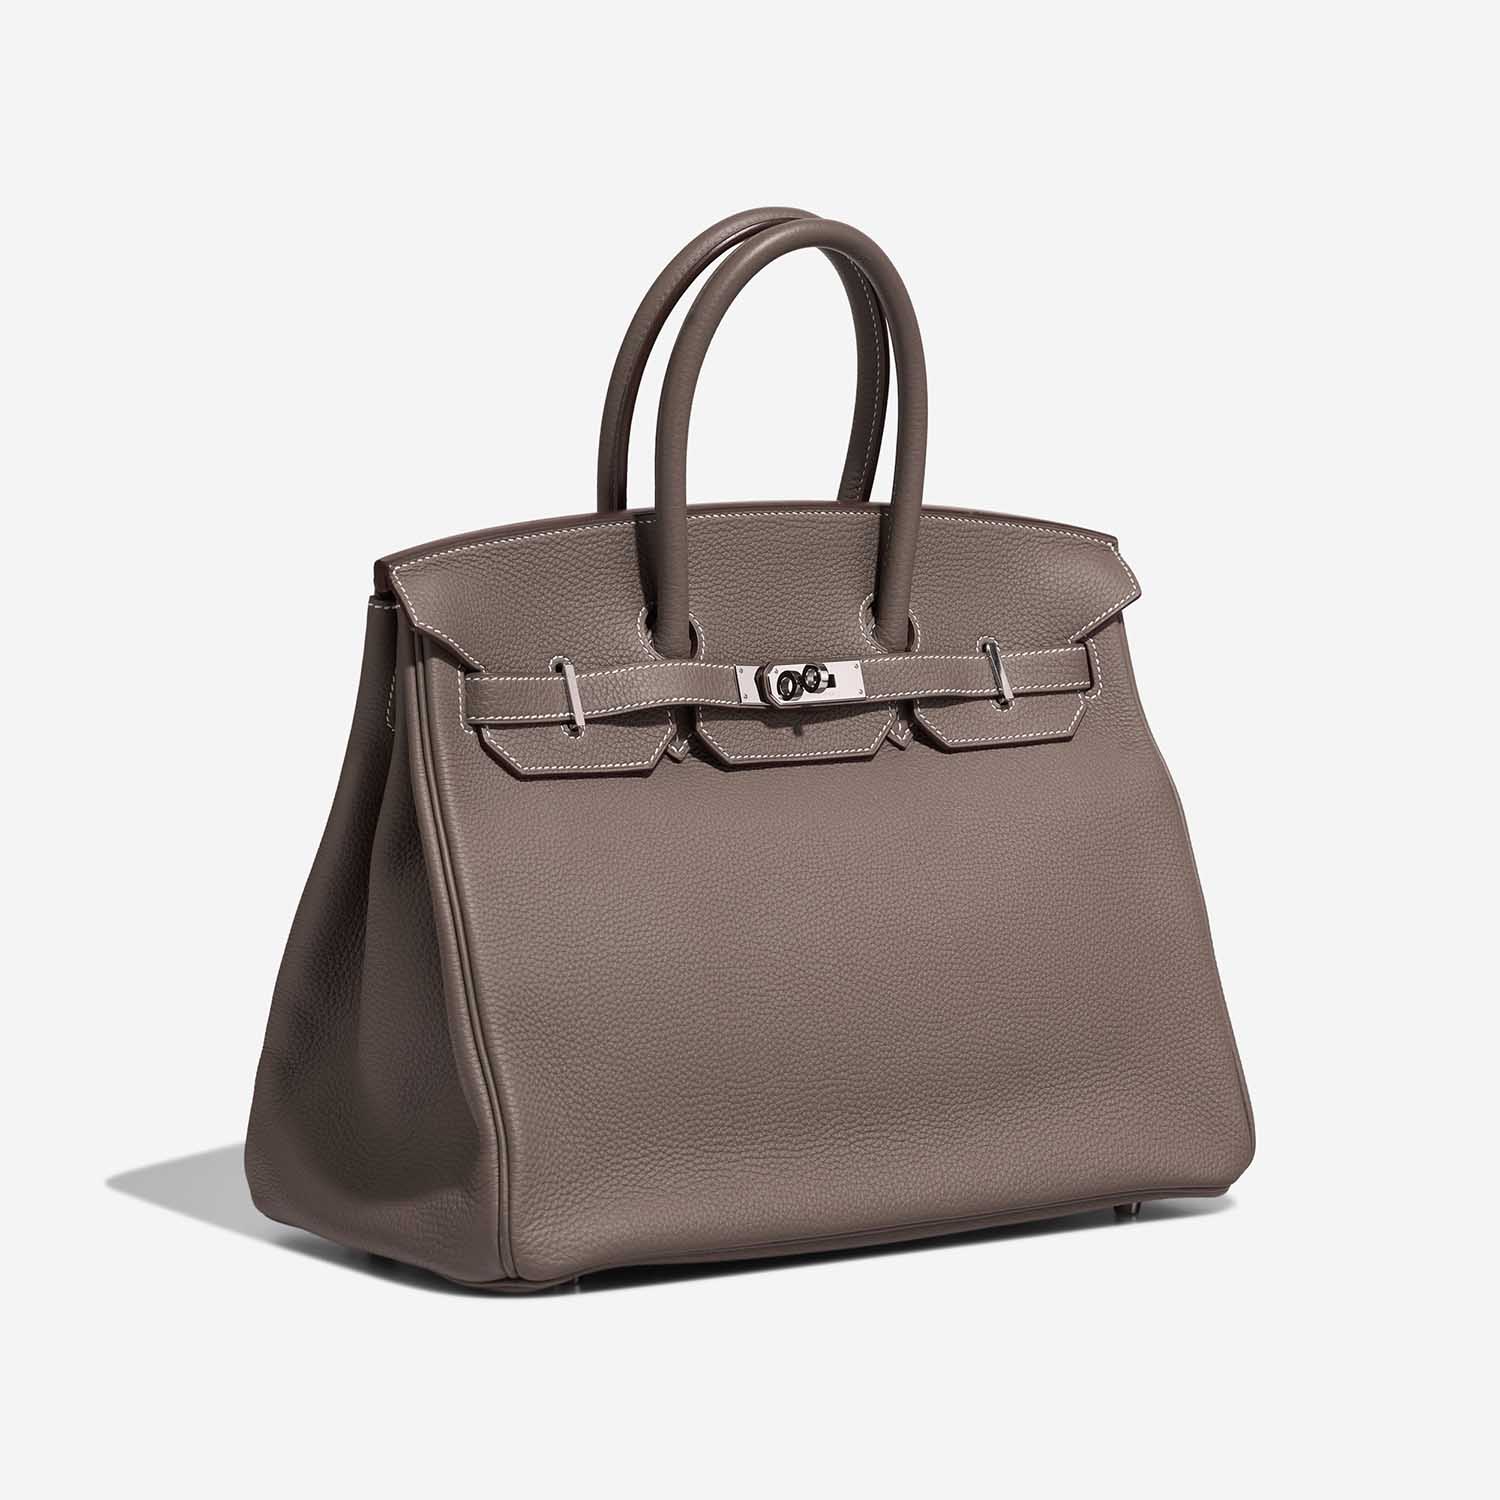 Hermès Birkin 35 Etoupe Side Front | Verkaufen Sie Ihre Designer-Tasche auf Saclab.com